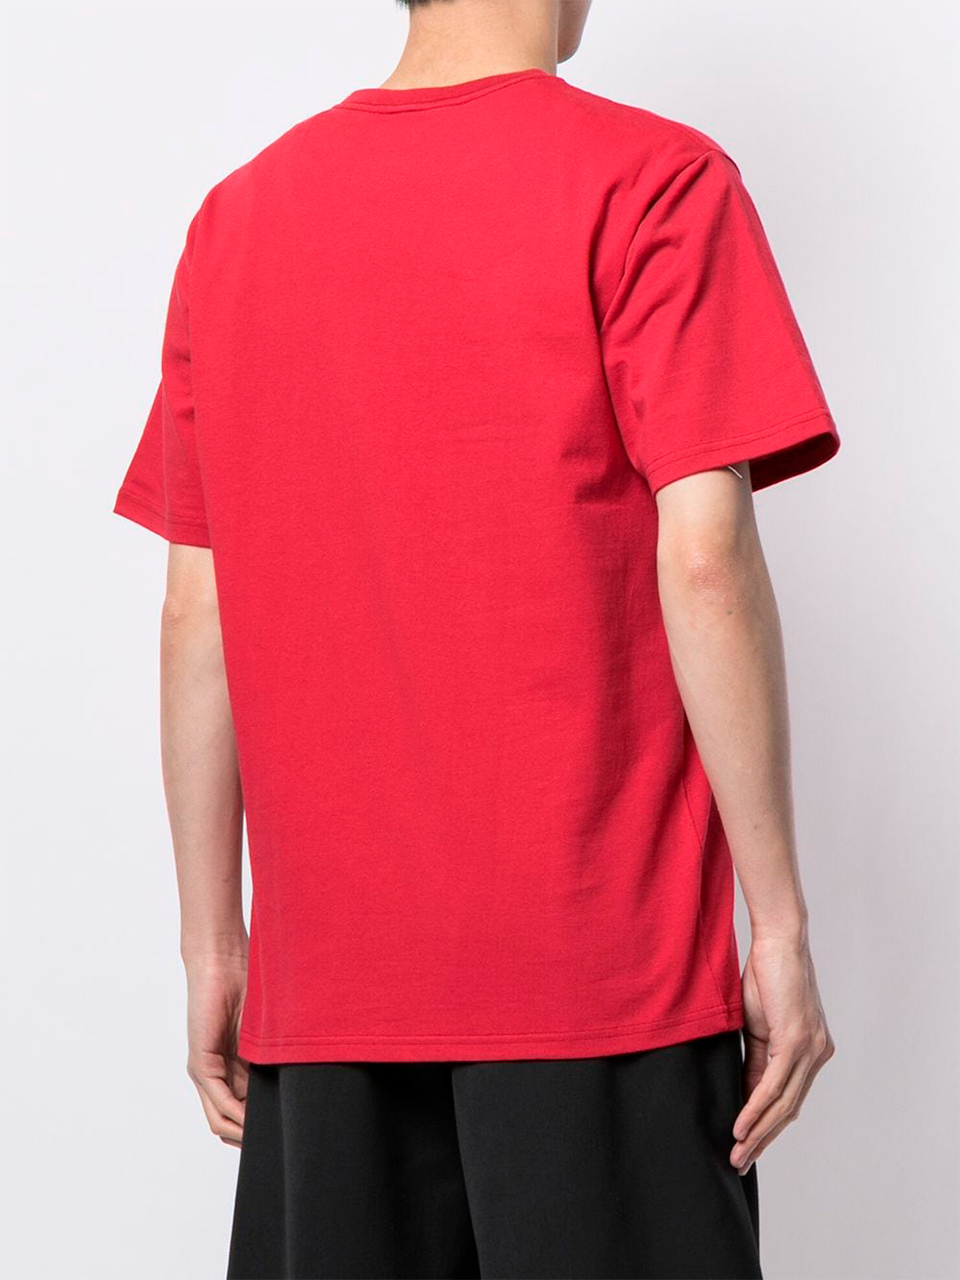 Imagem de: Camiseta BAPE Vermelha com Logo